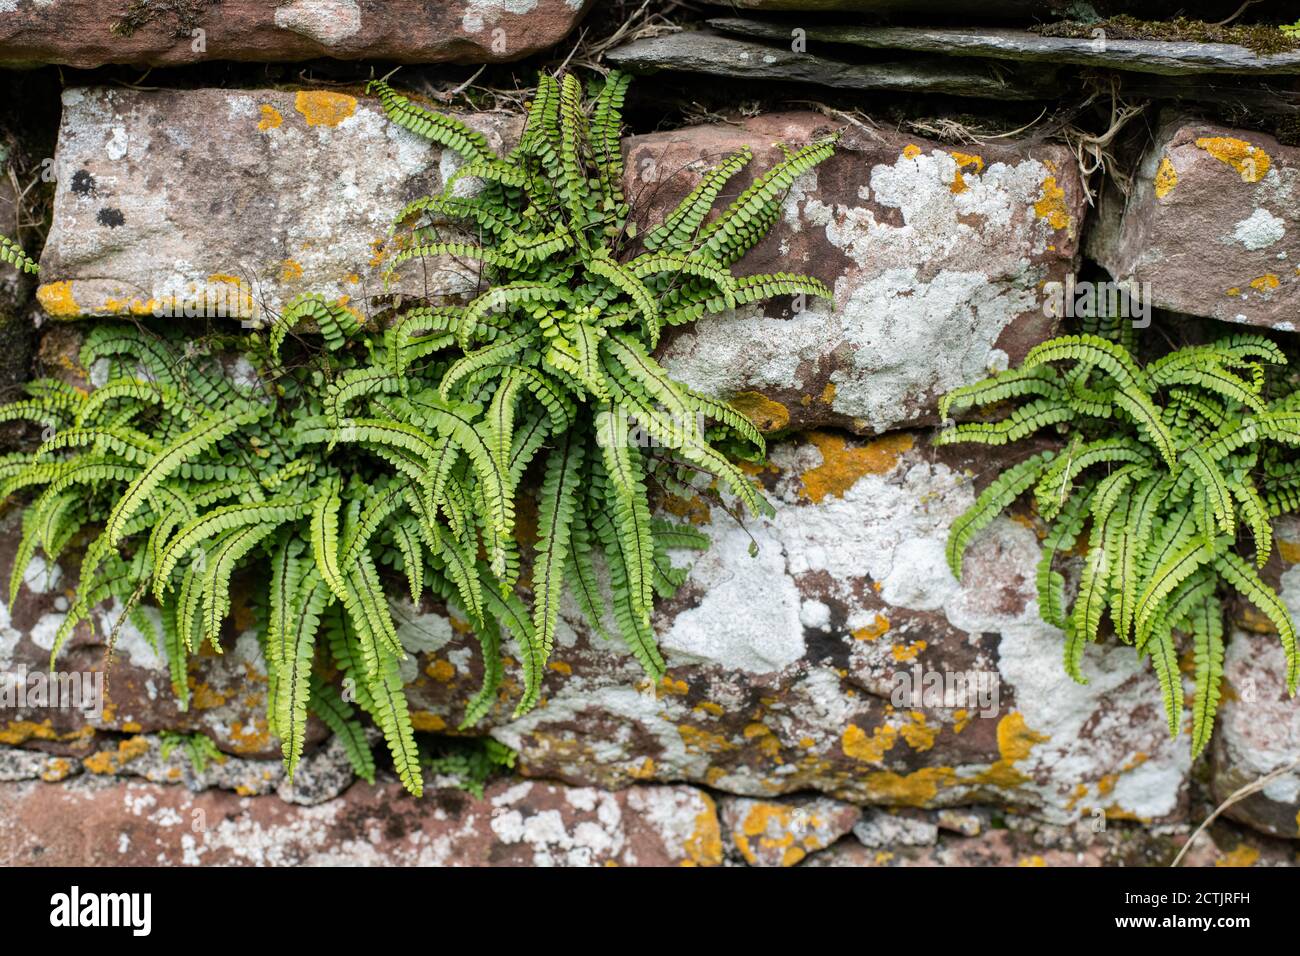 Common Maidenhair Spleenwort or Asplenium trichomanes subsp quadrivalens growing in sandstone wall, Cumbria, England, UK Stock Photo